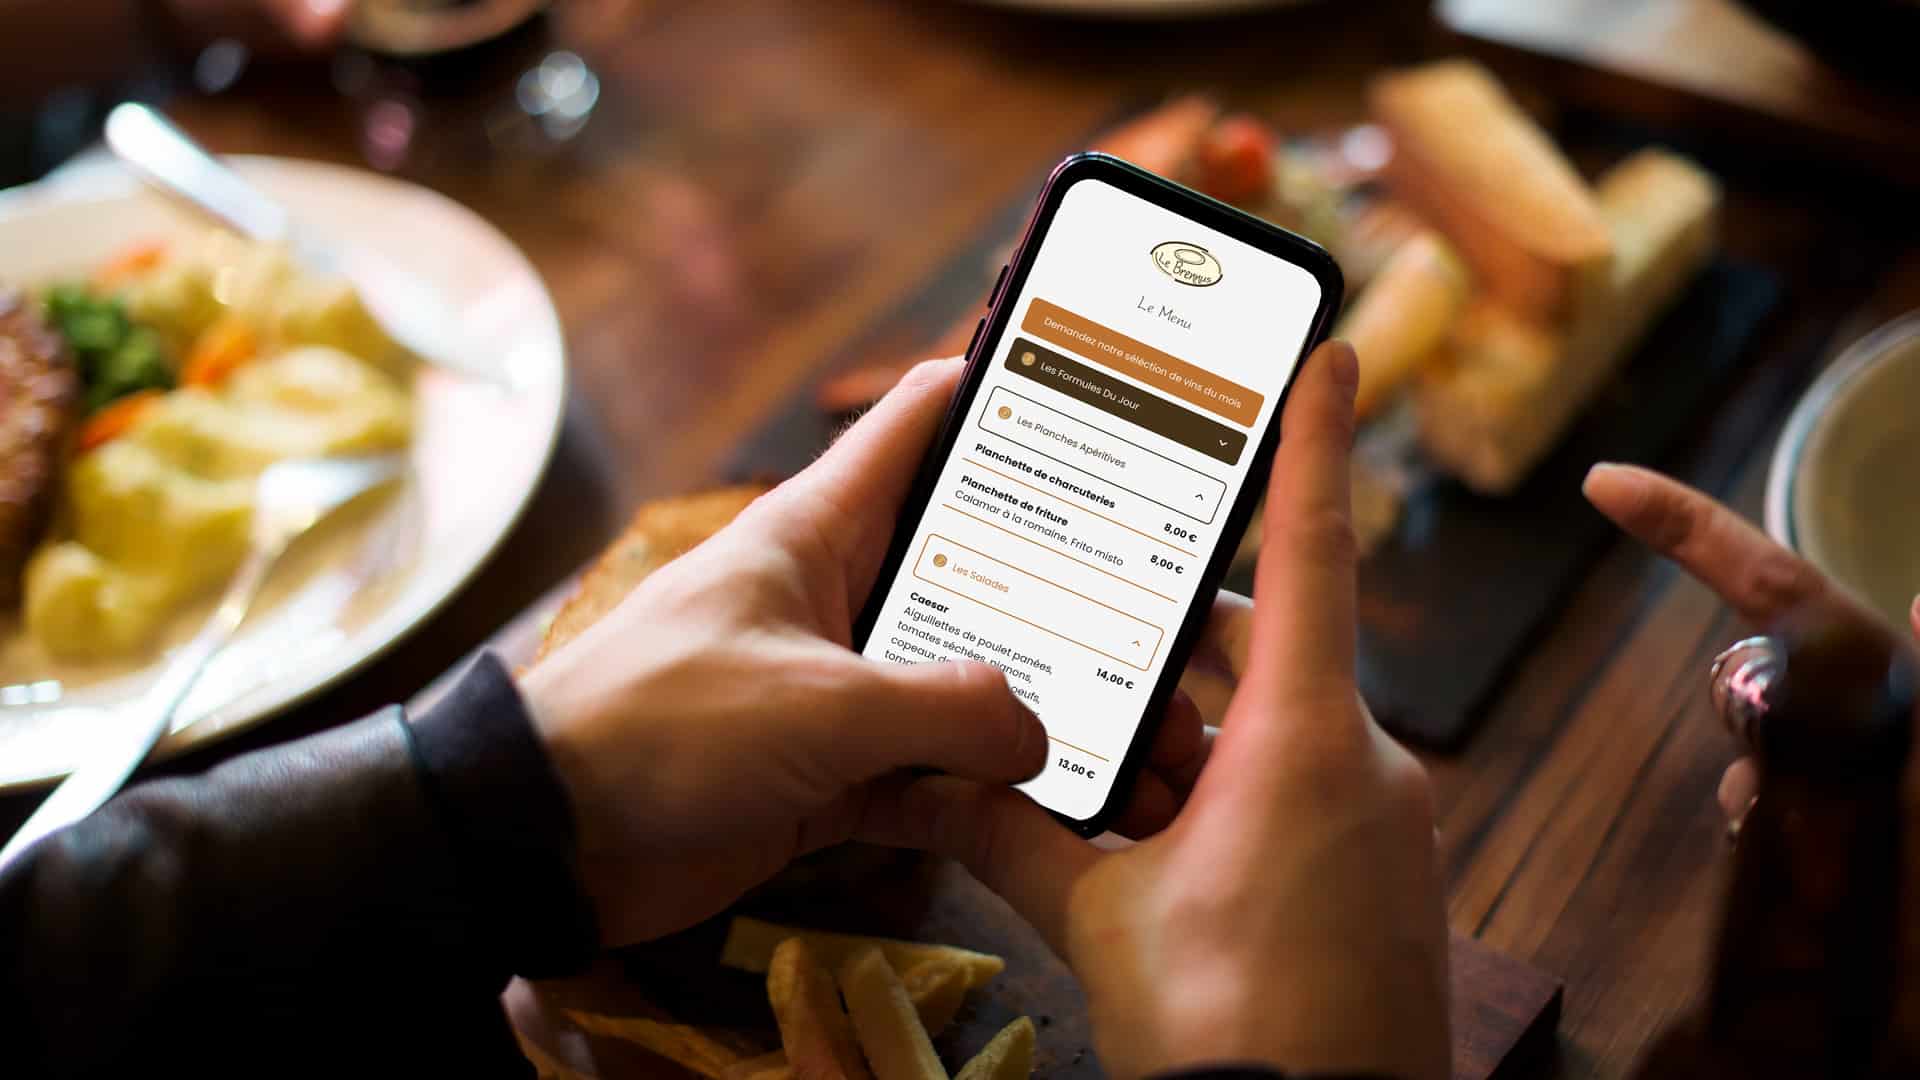 Les clients du restaurant vont pouvoir consulter en ligne via l'application mobile, le menu.